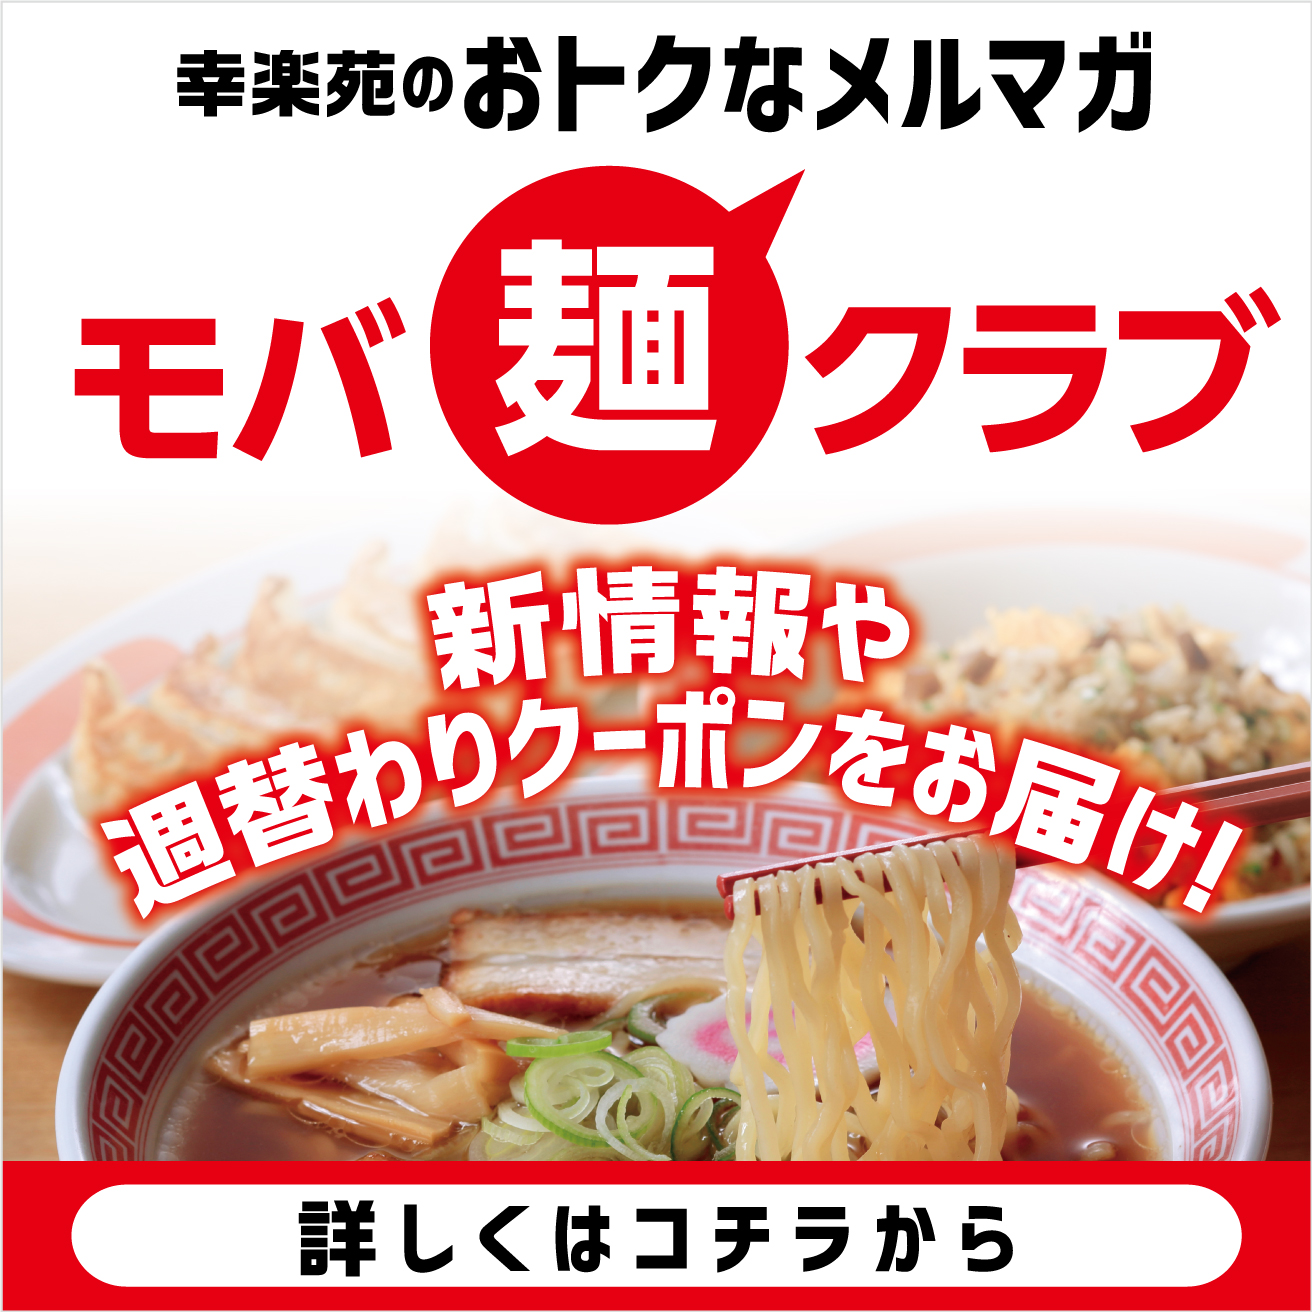 モバ麺クラブ